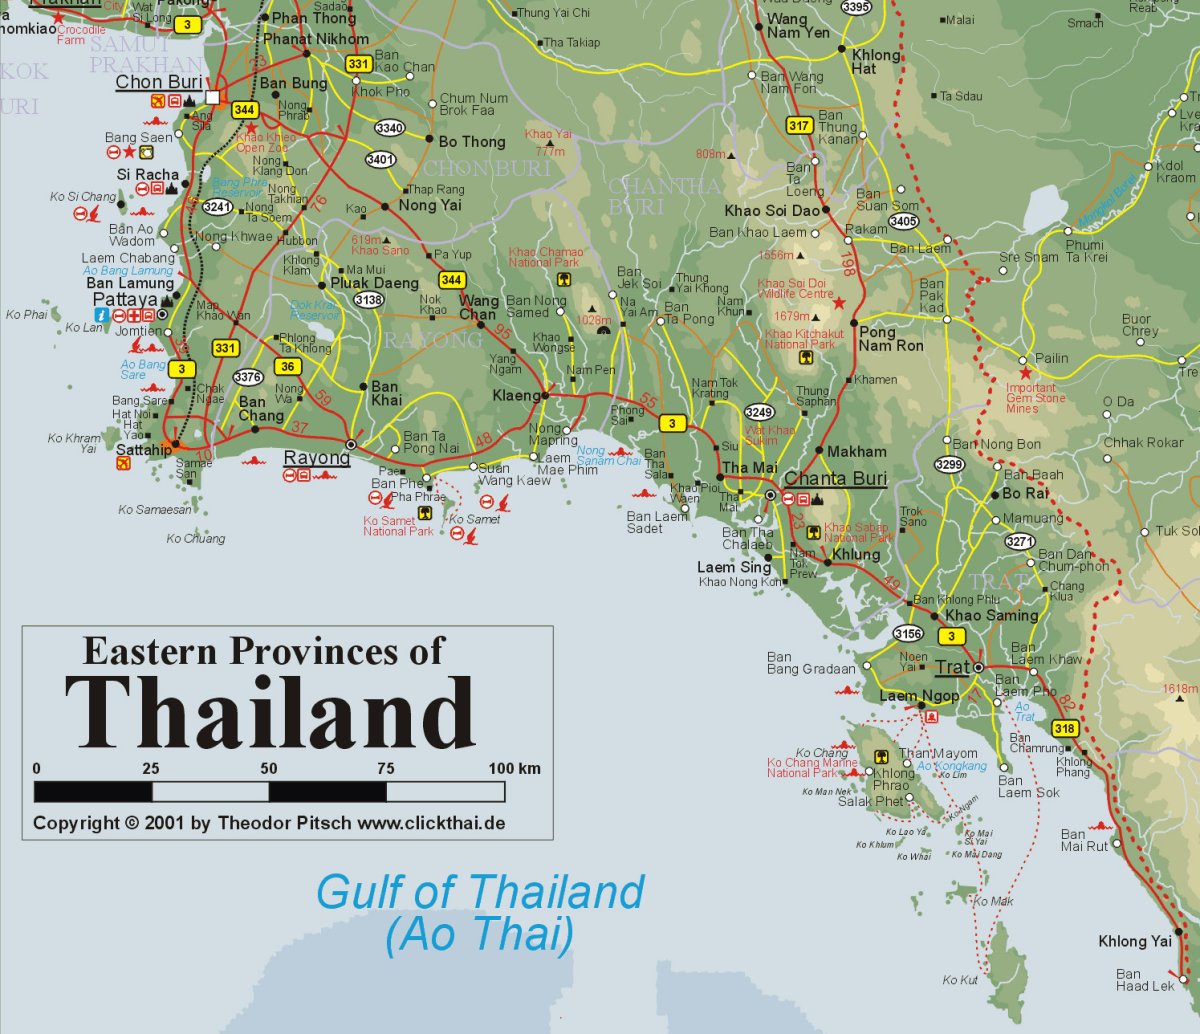 Провинция Районг Таиланд на карте